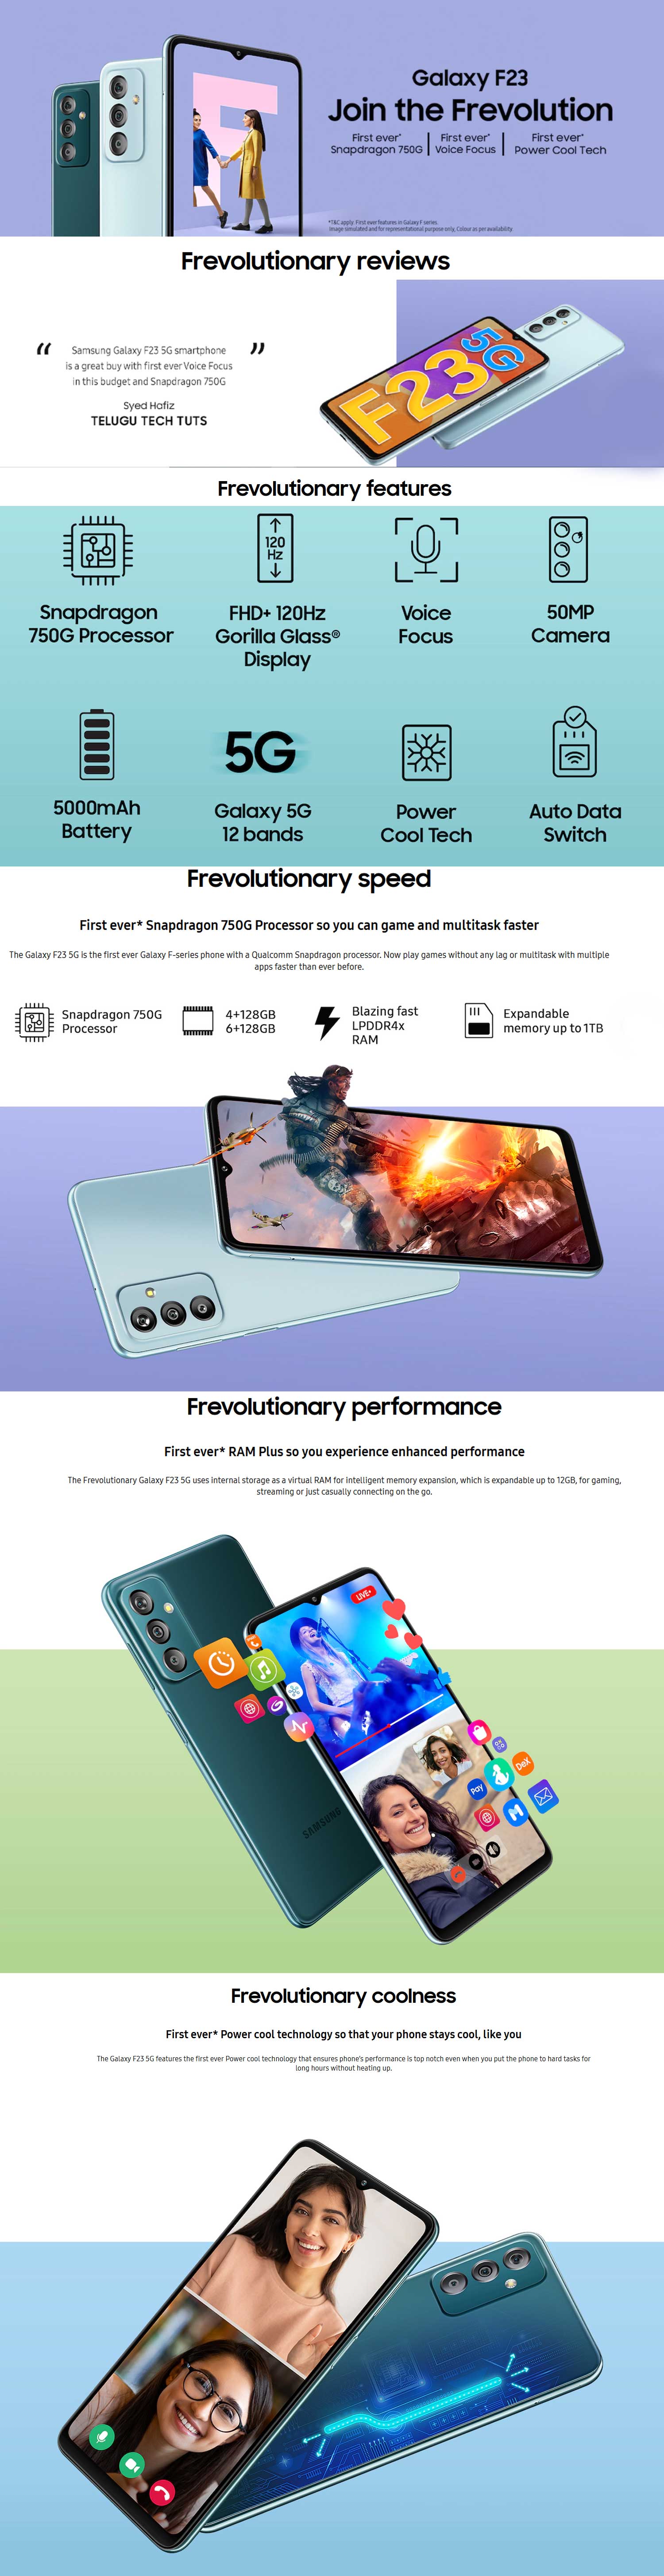 SAMSUNG Galaxy F23 5G 2.2 GHz 750G Processor 4GB Ram 128GB image description